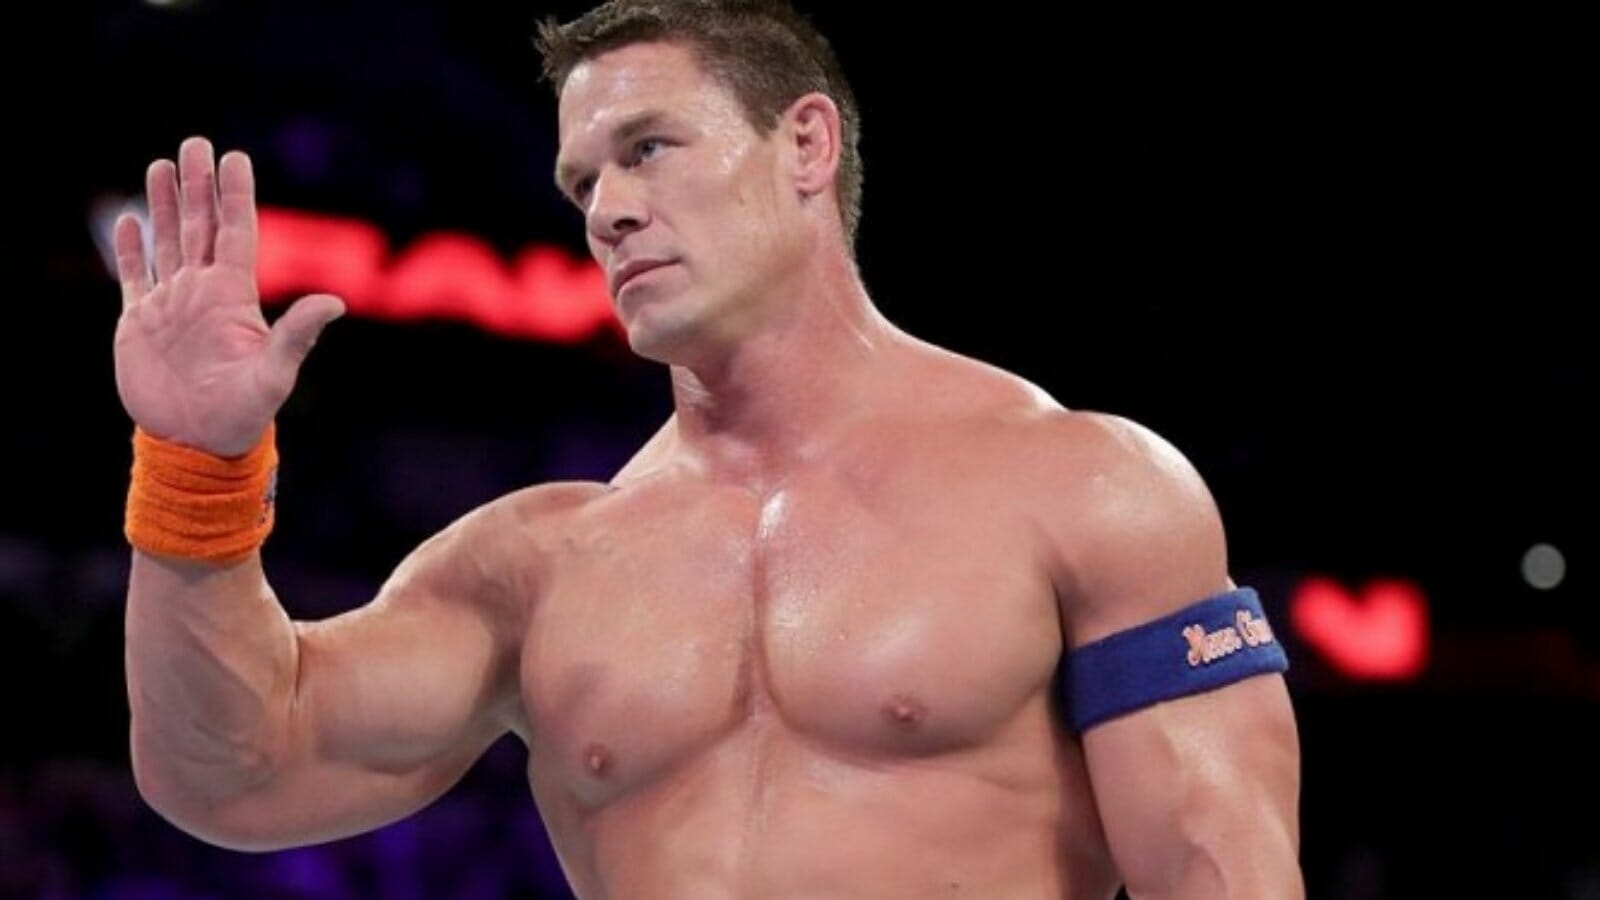 John Cena in his wrestling days